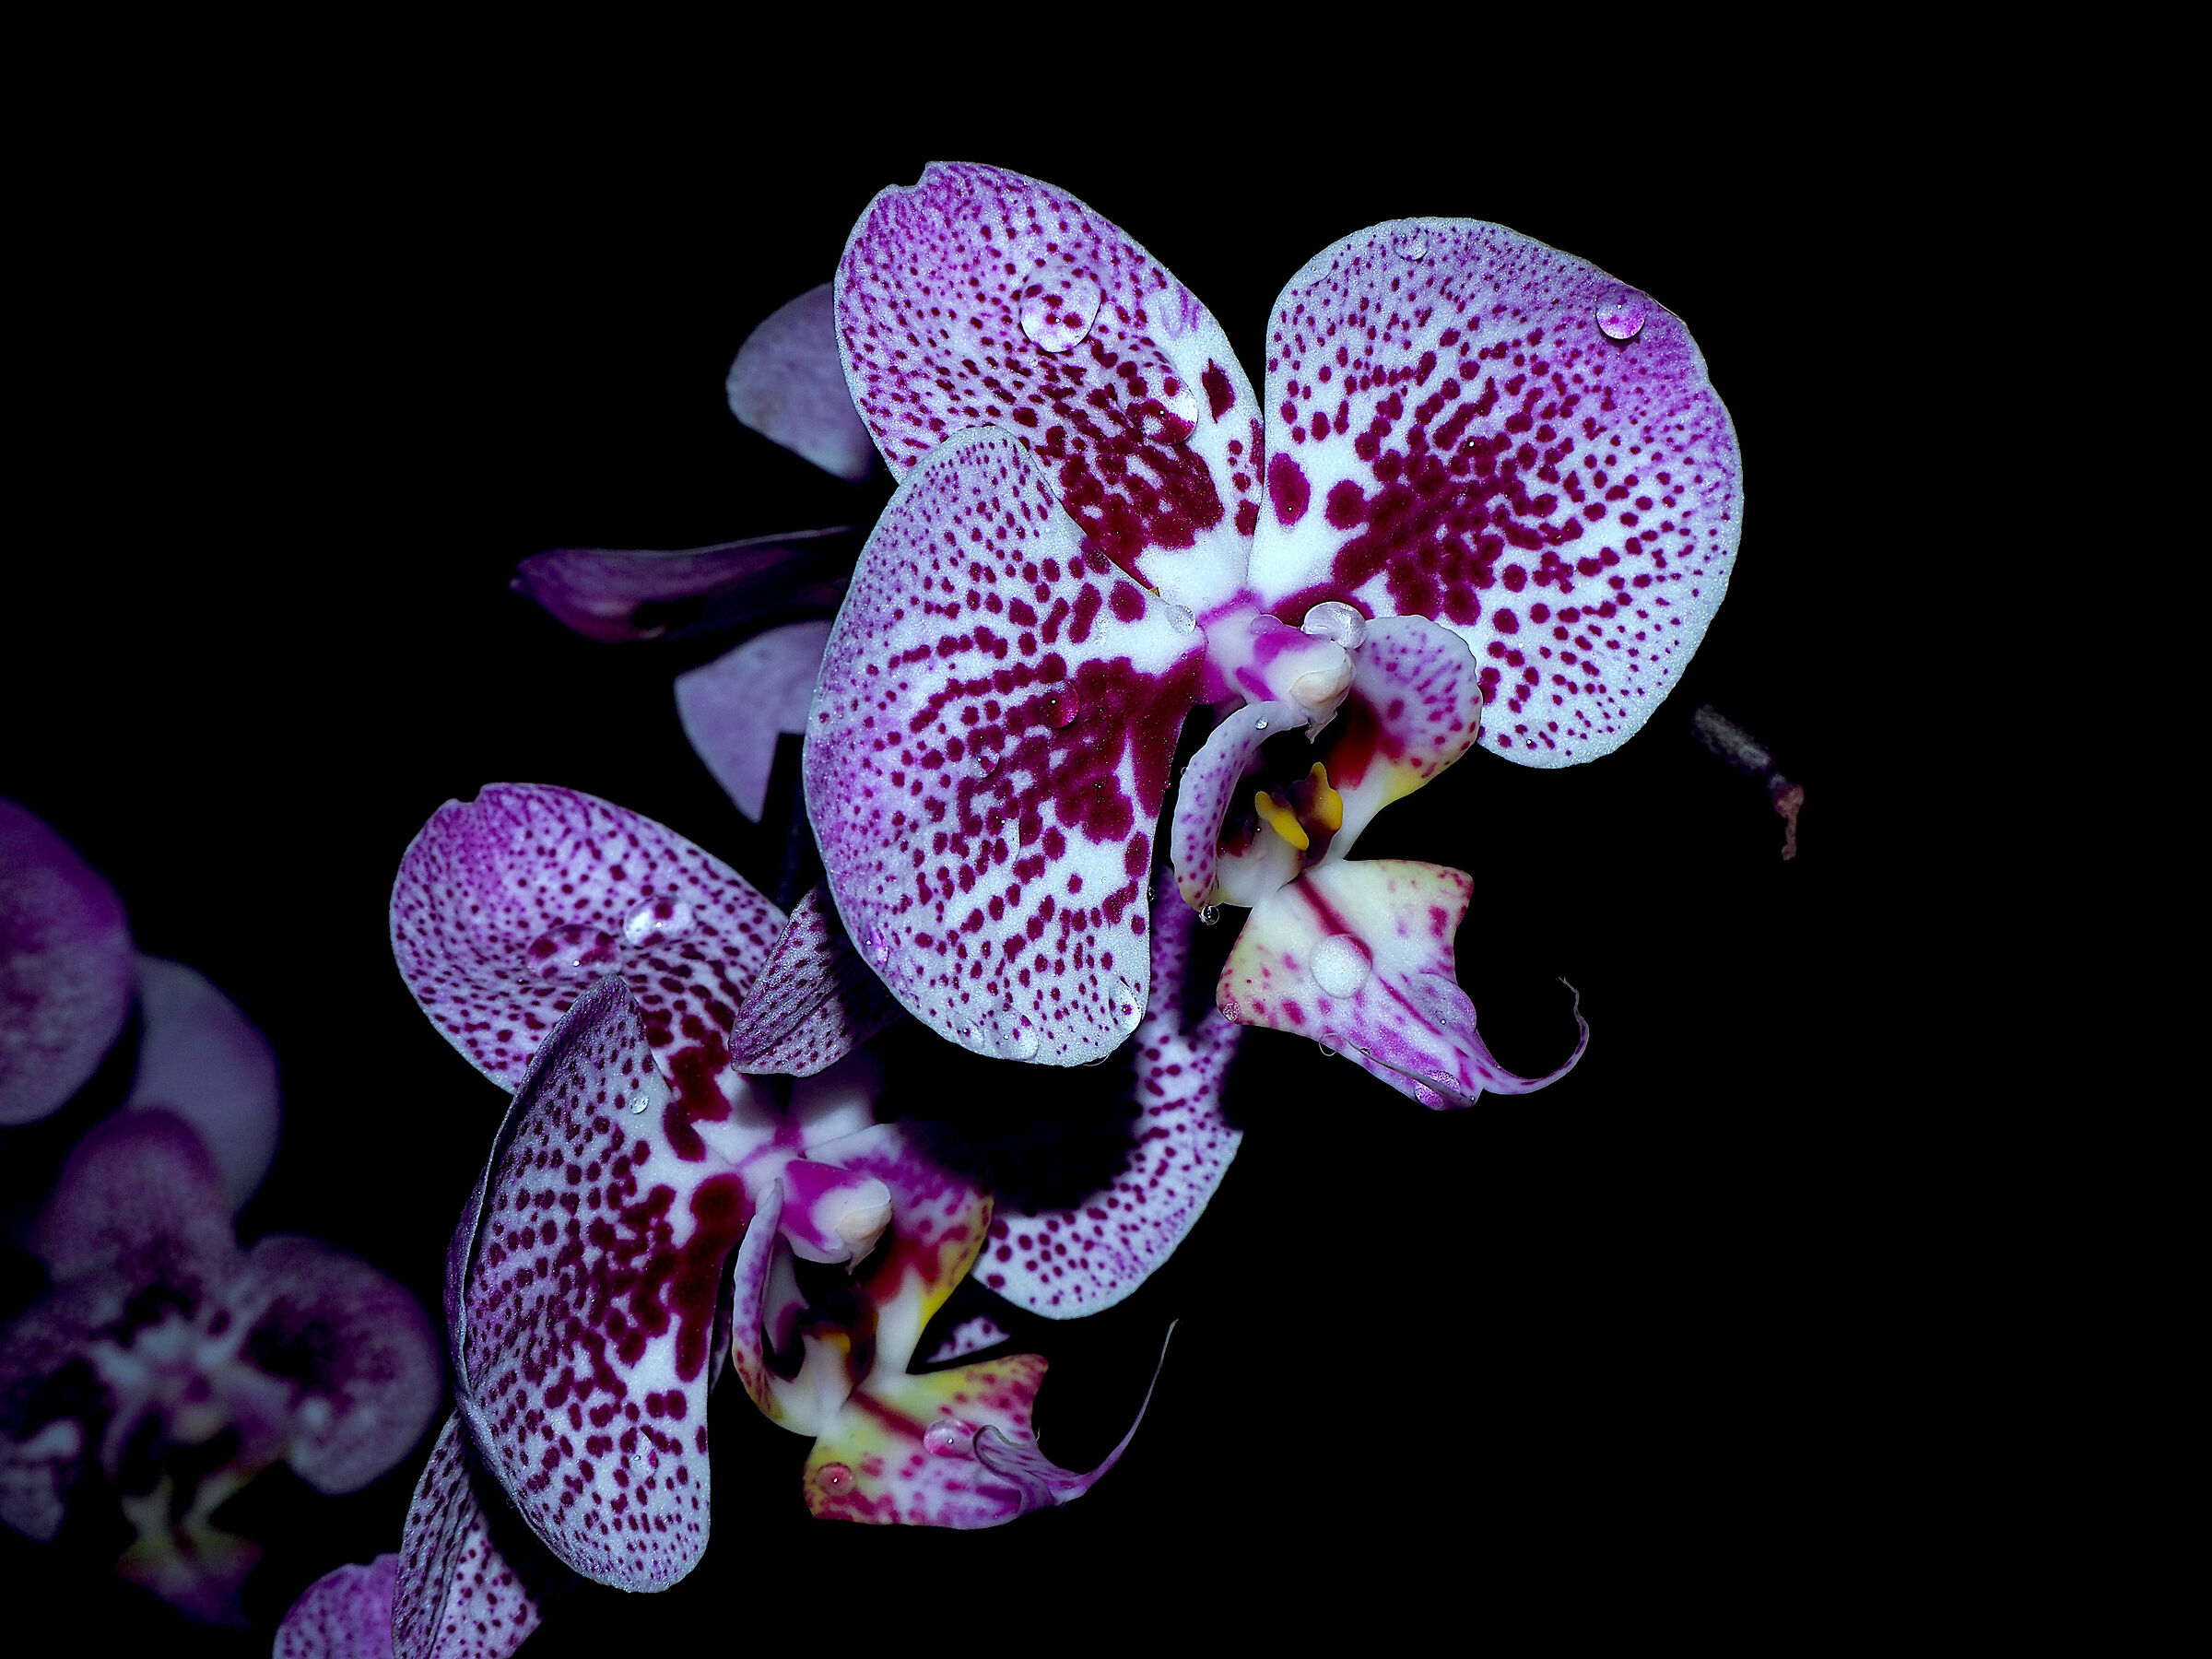 Orchidea in low key...